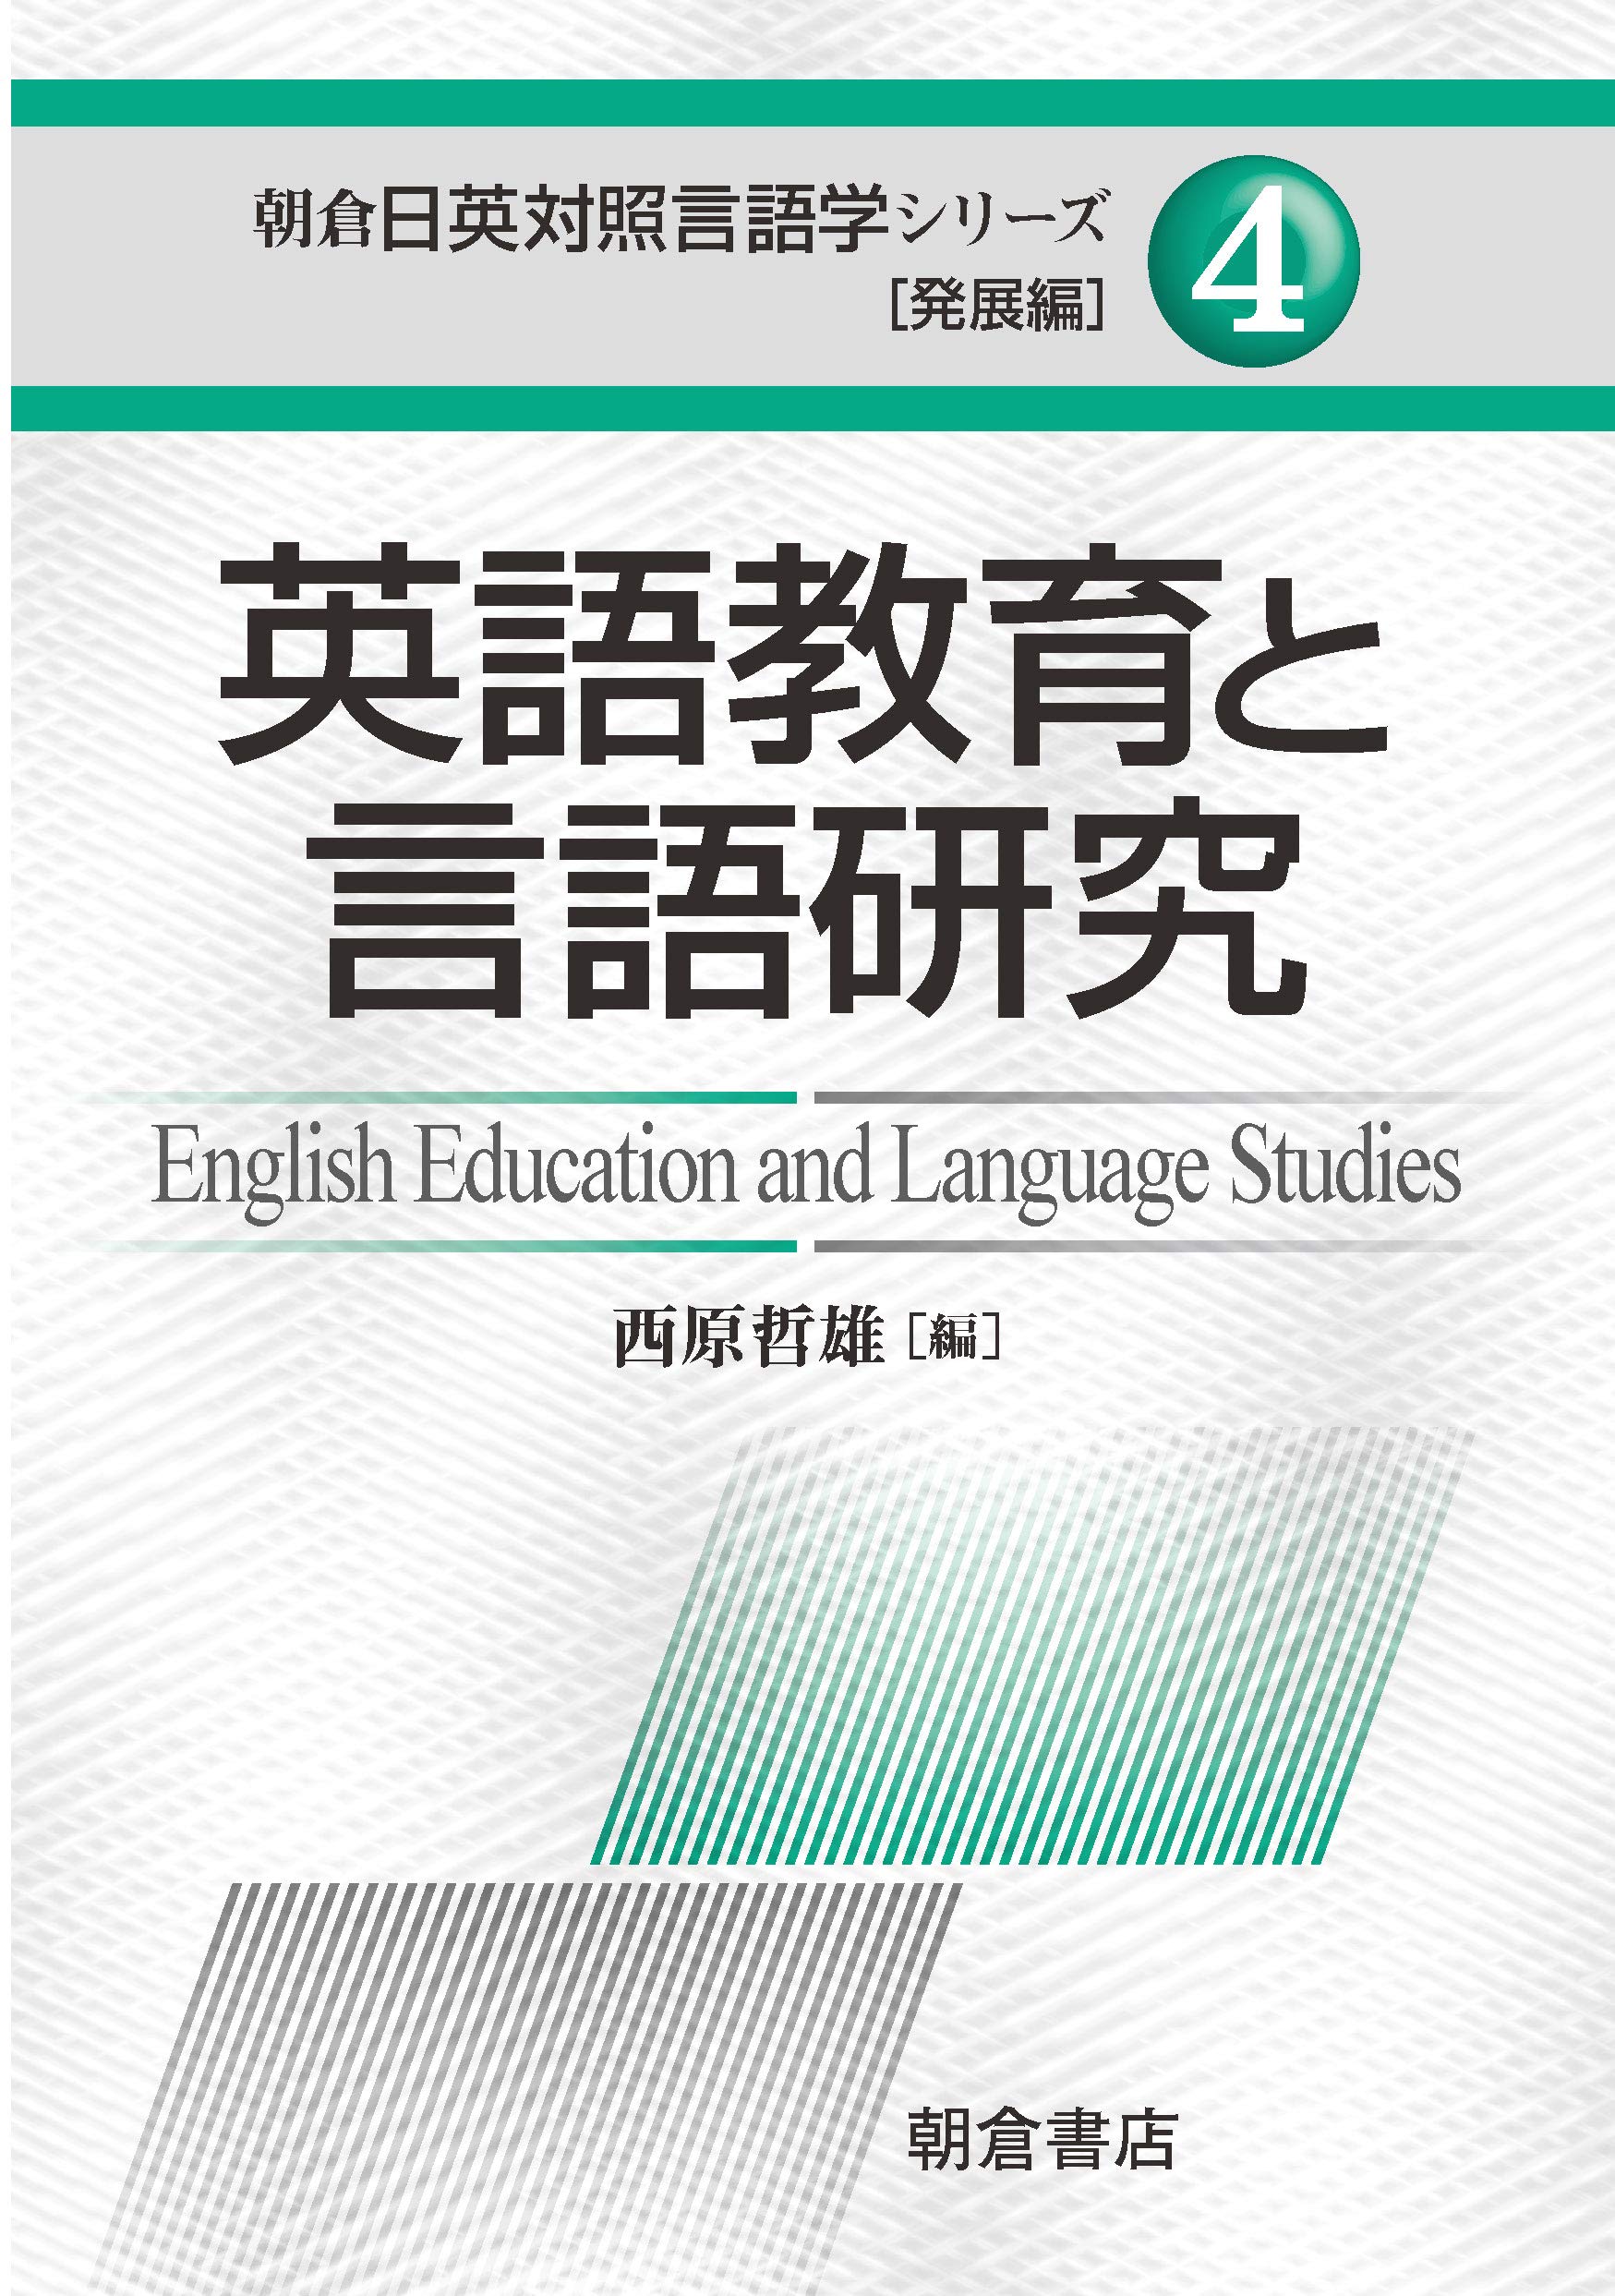 「英語教育と言語研究」